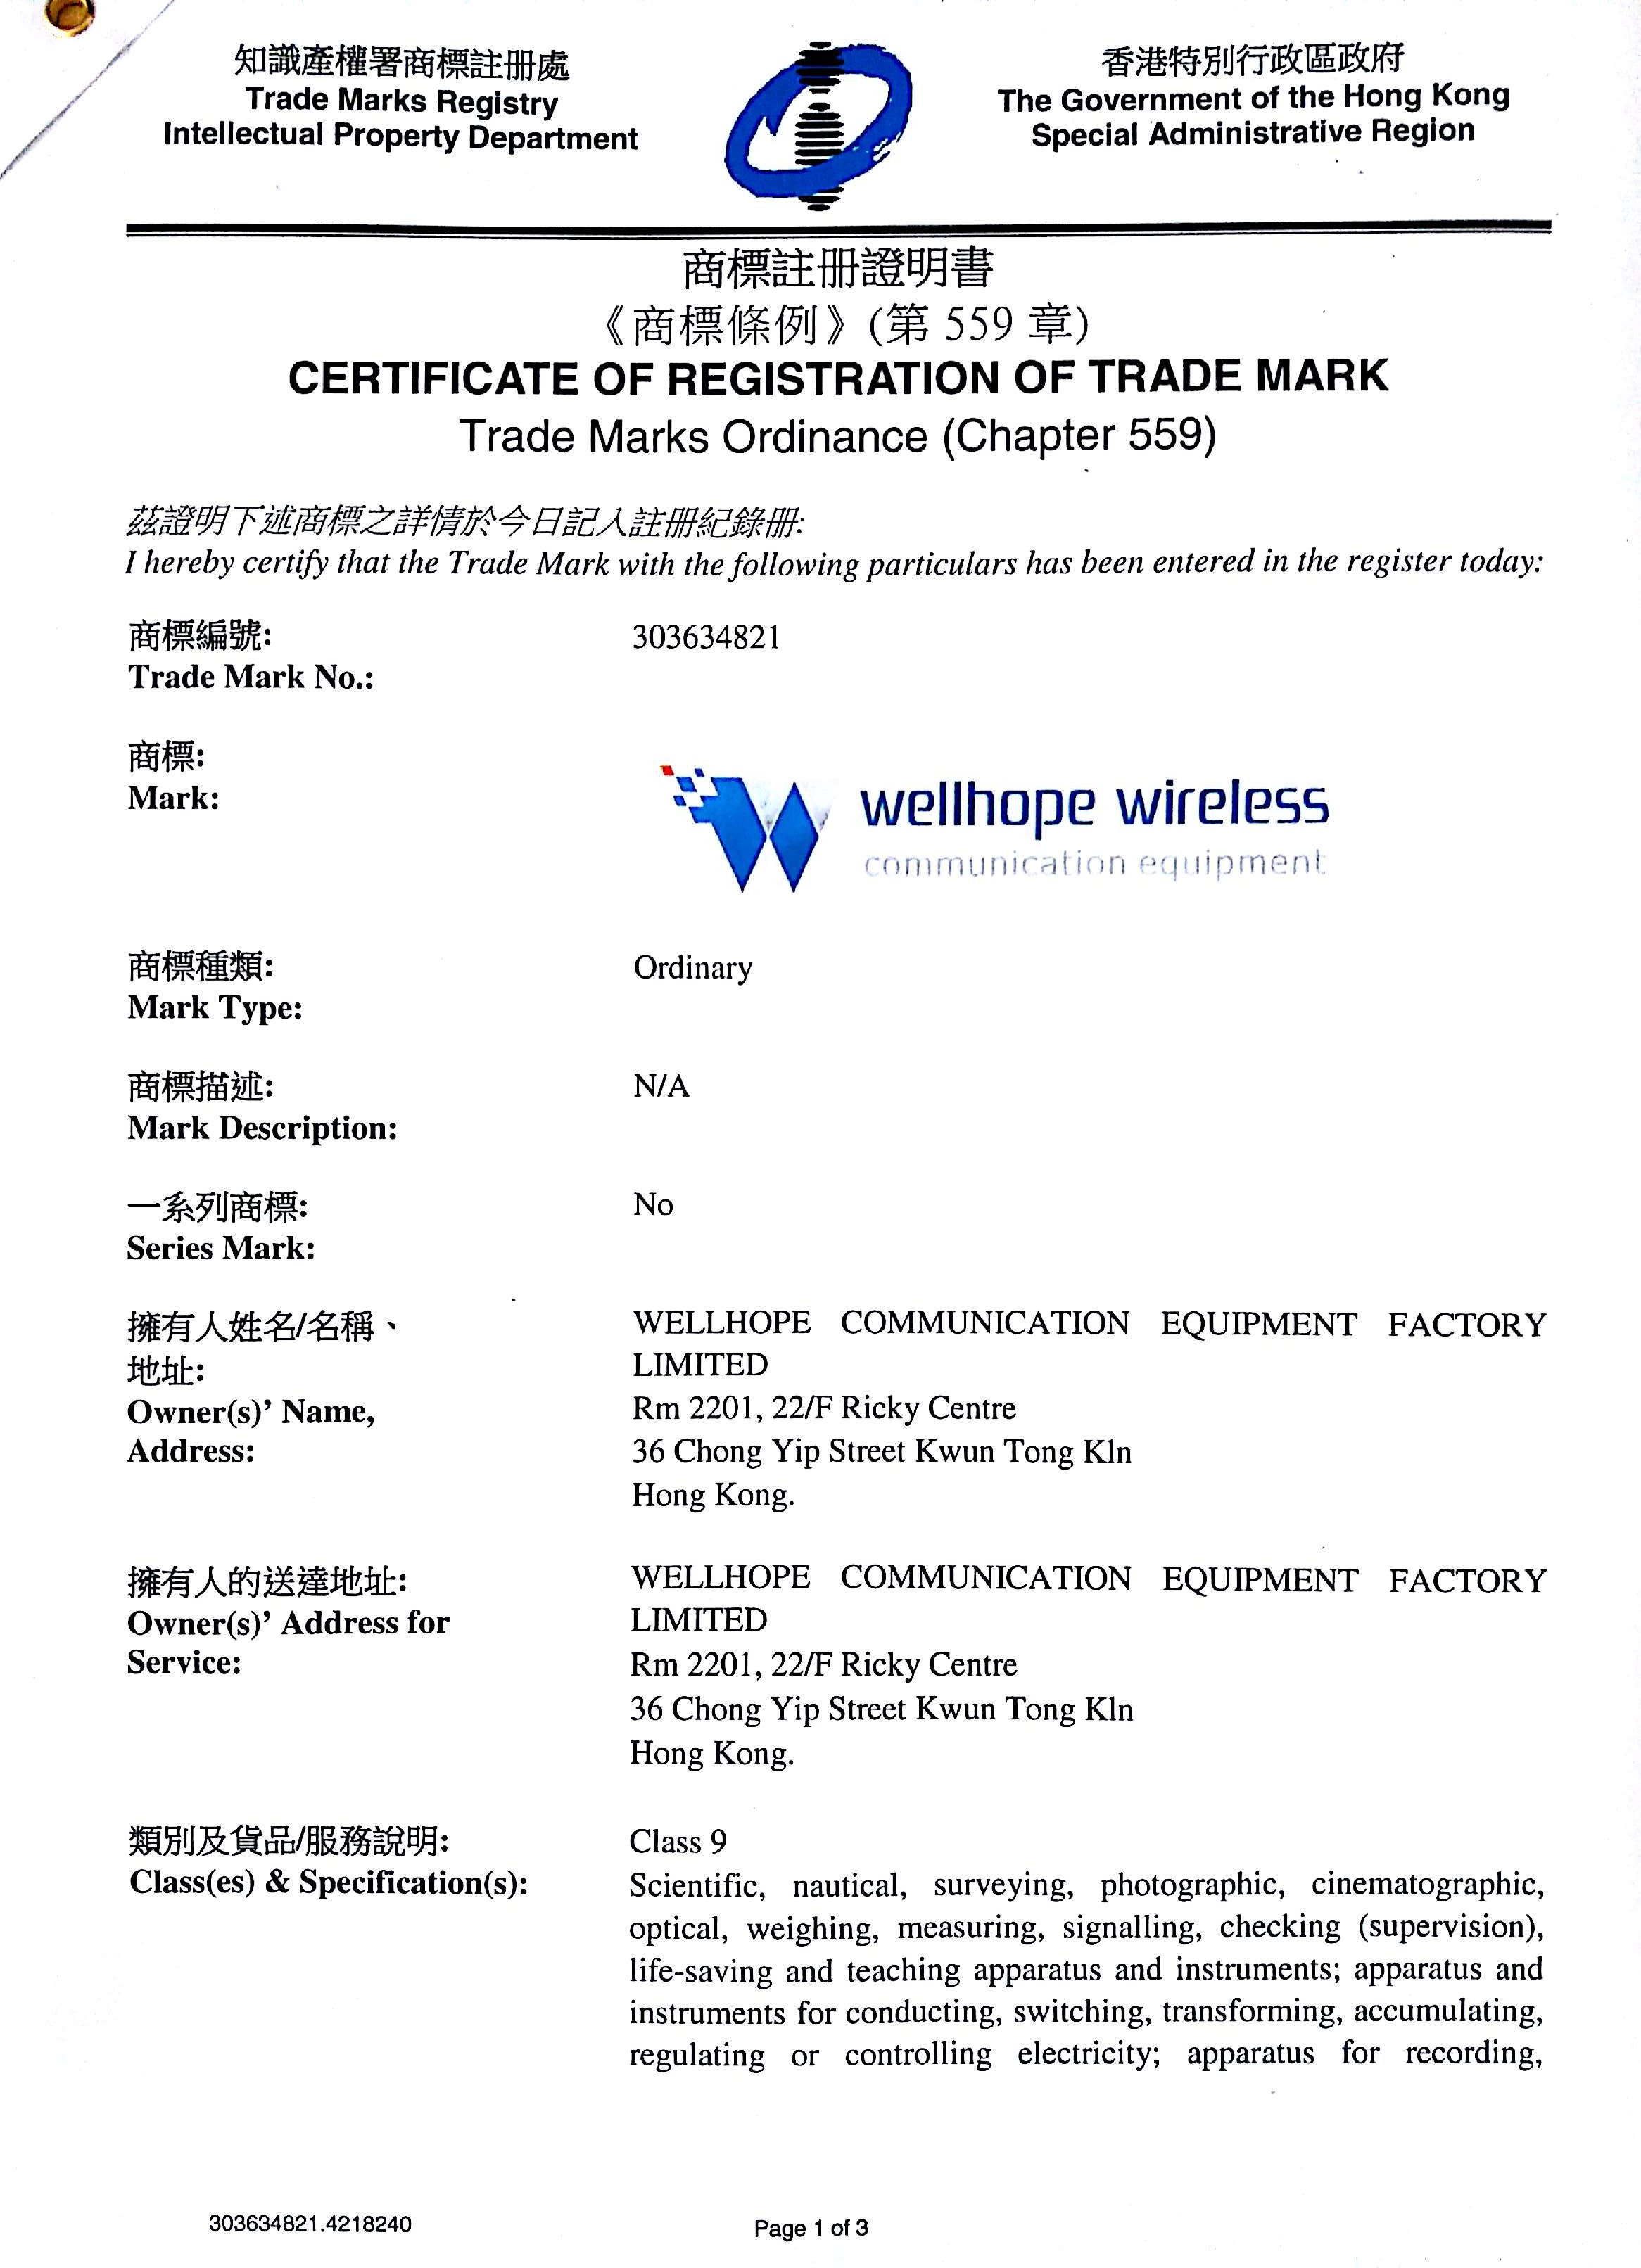 беспроводная торговая марка Wellhope зарегистрирована